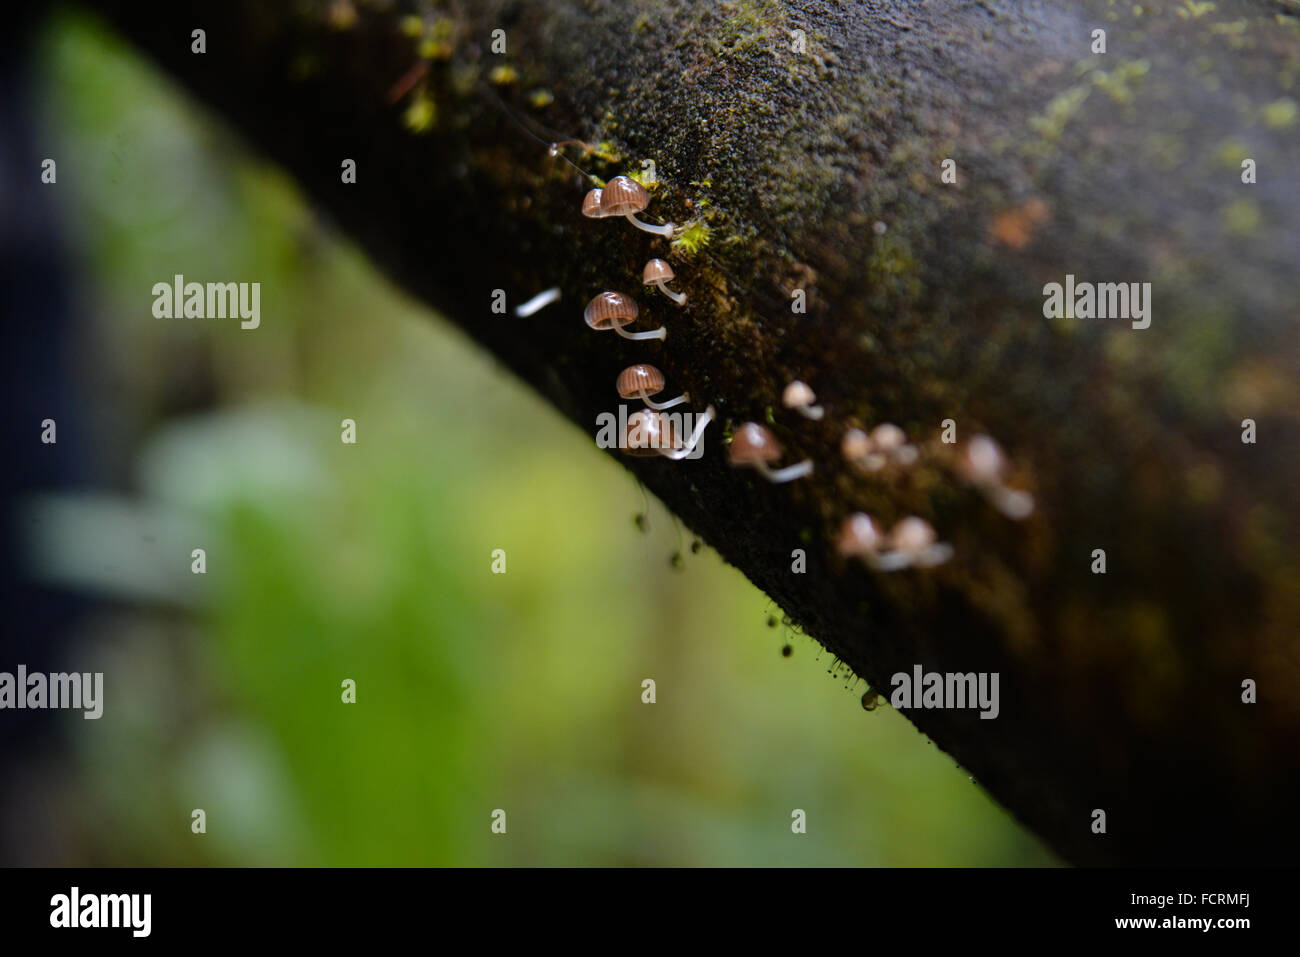 Piccolo e delicato color marrone chiaro funghi sulla superficie di una struttura ad albero. Bellavista Cloud Forest Riserve, Tandayapa, Ecuador Foto Stock